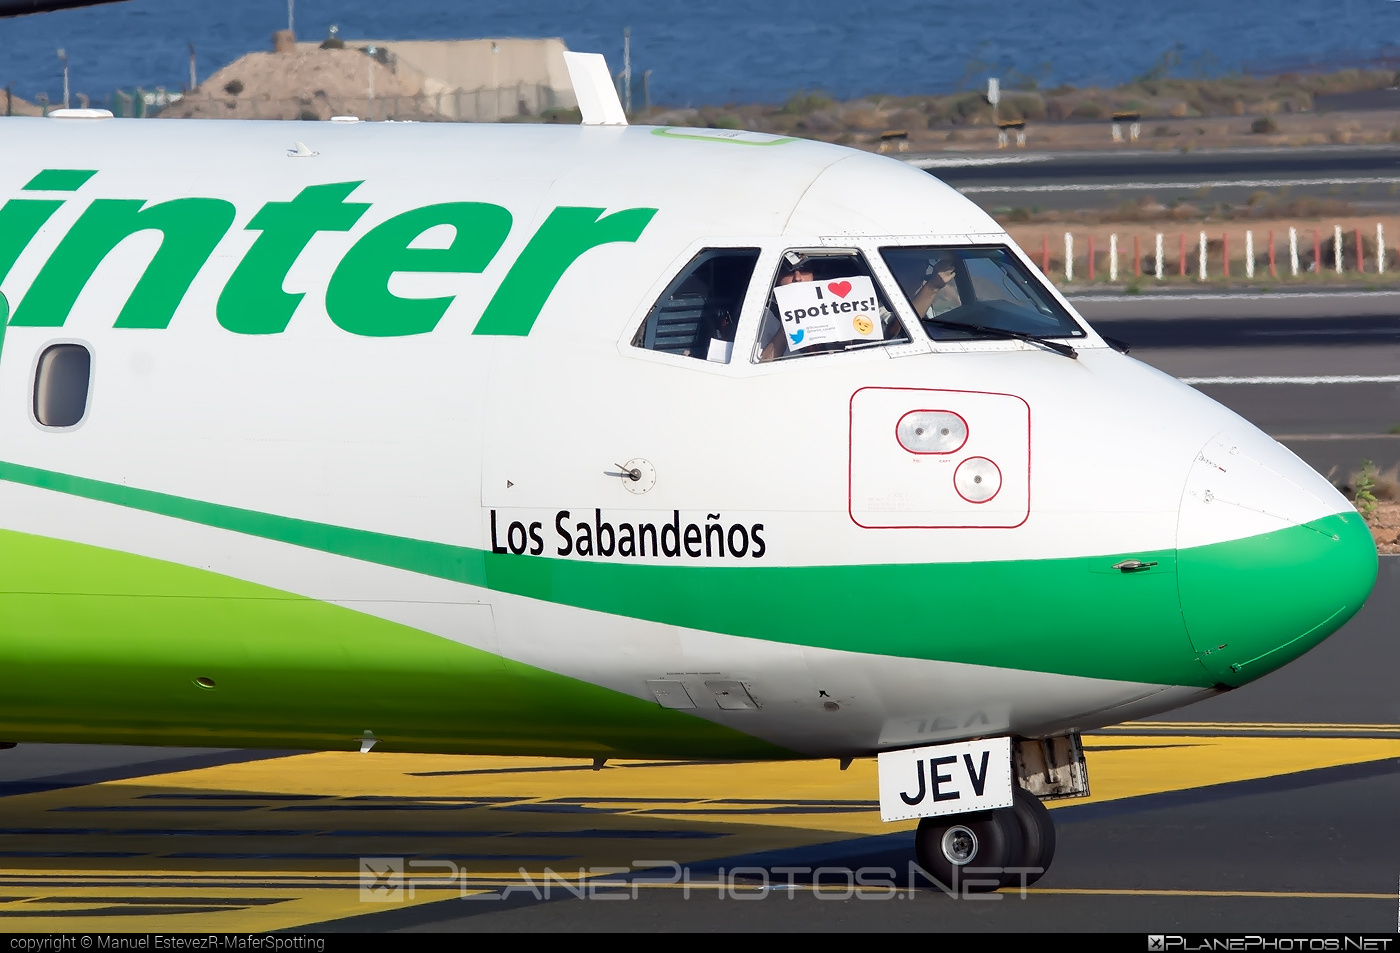 ATR 72-212A - EC-JEV operated by Binter Canarias #BinterCanarias #atr #atr72 #atr72212a #atr72500